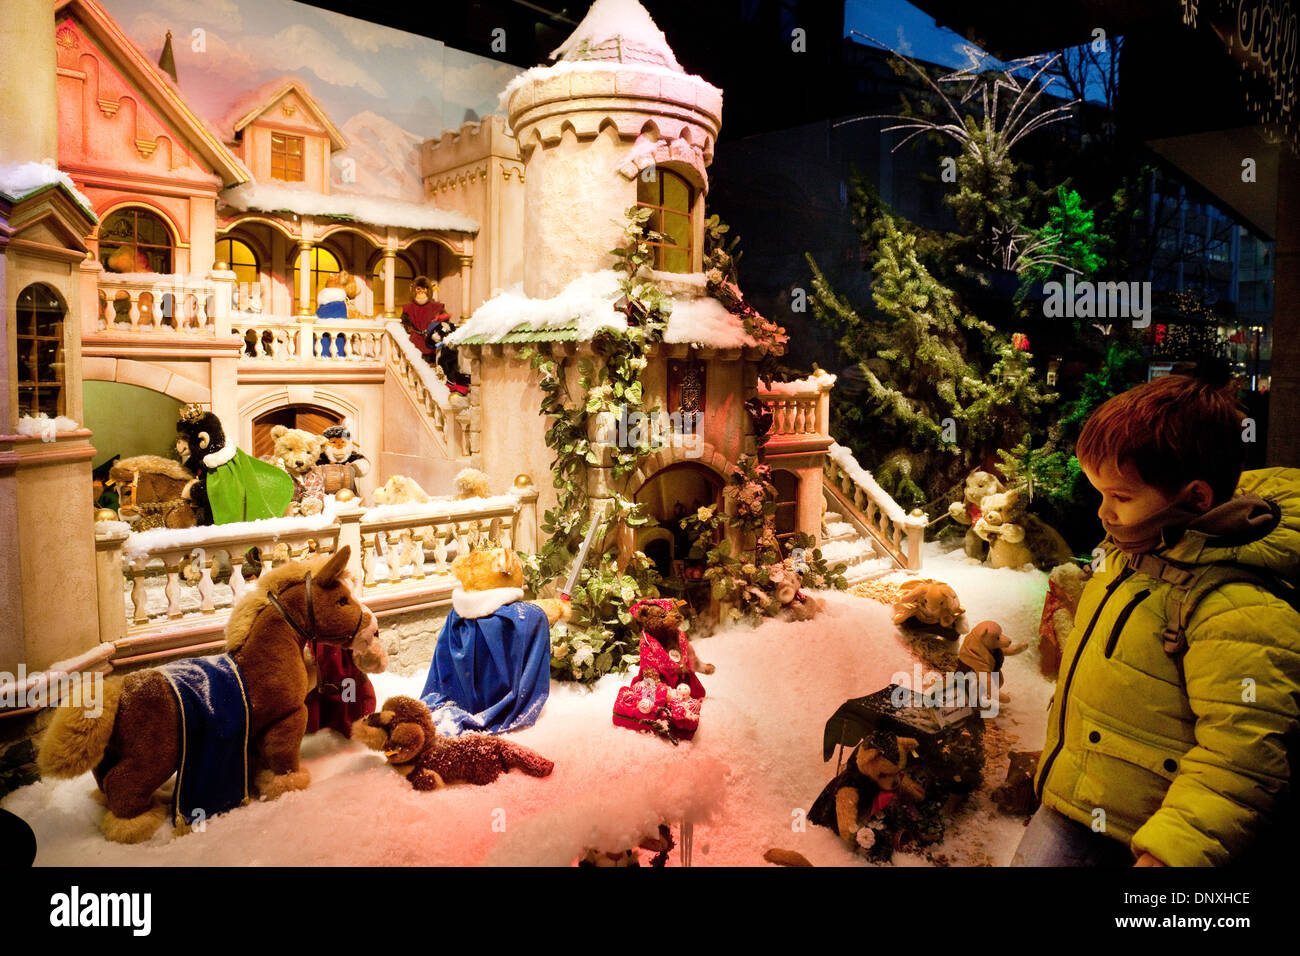 Ein Kind bei Toys in einem Schaufenster Shop betrachten, Weihnachten, Köln, (Köln), Deutschland, Europa Stockfoto